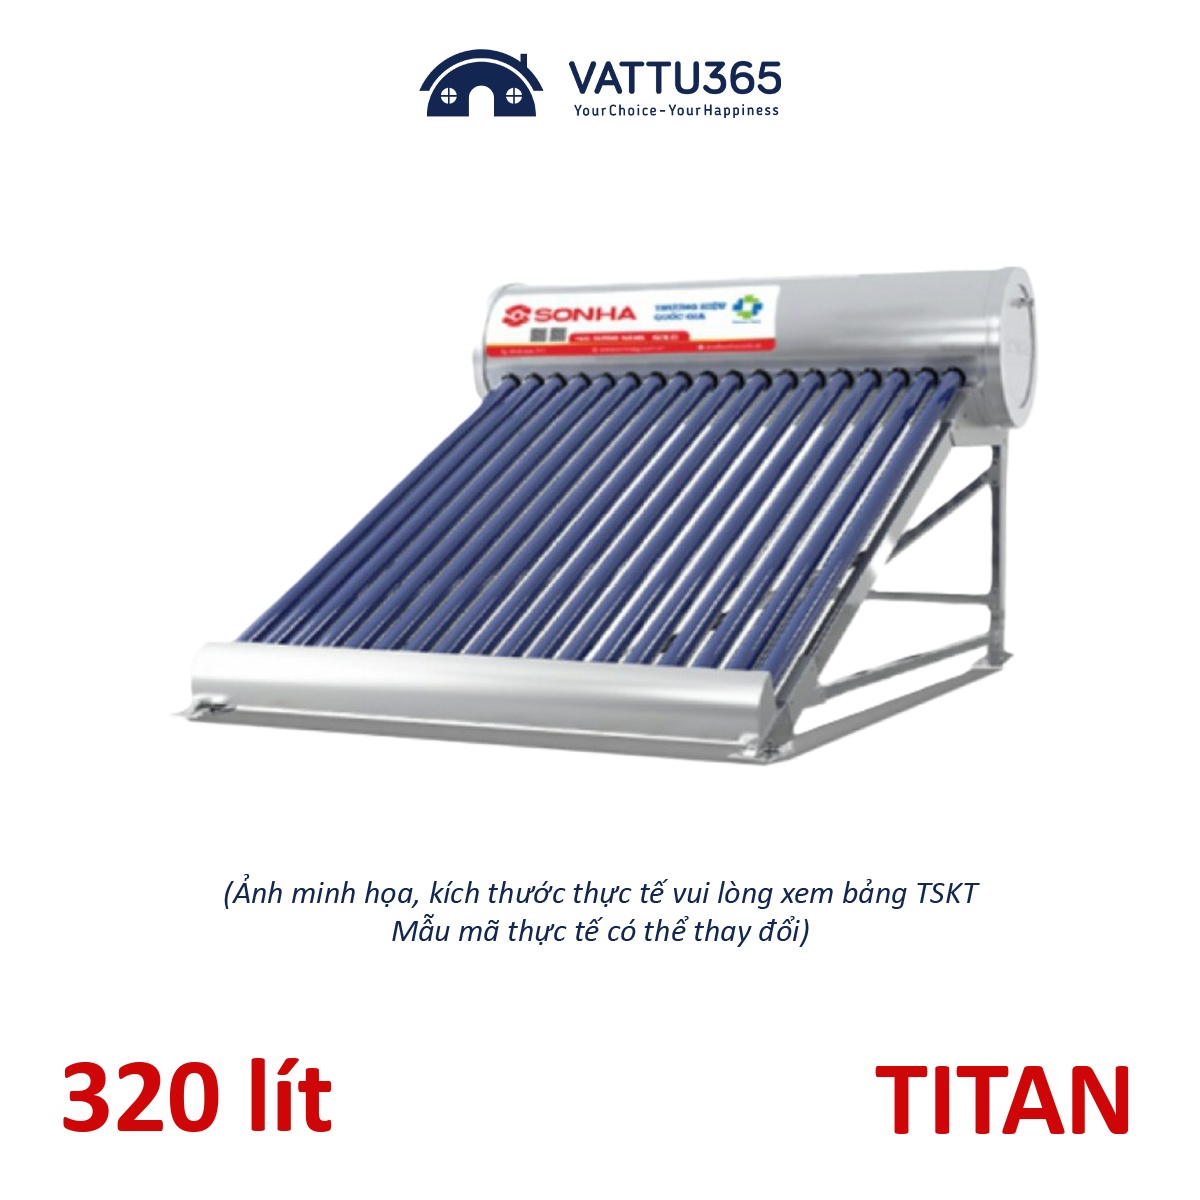 Máy nước nóng năng lượng mặt trời Sơn Hà TDN TITAN 320 Lít